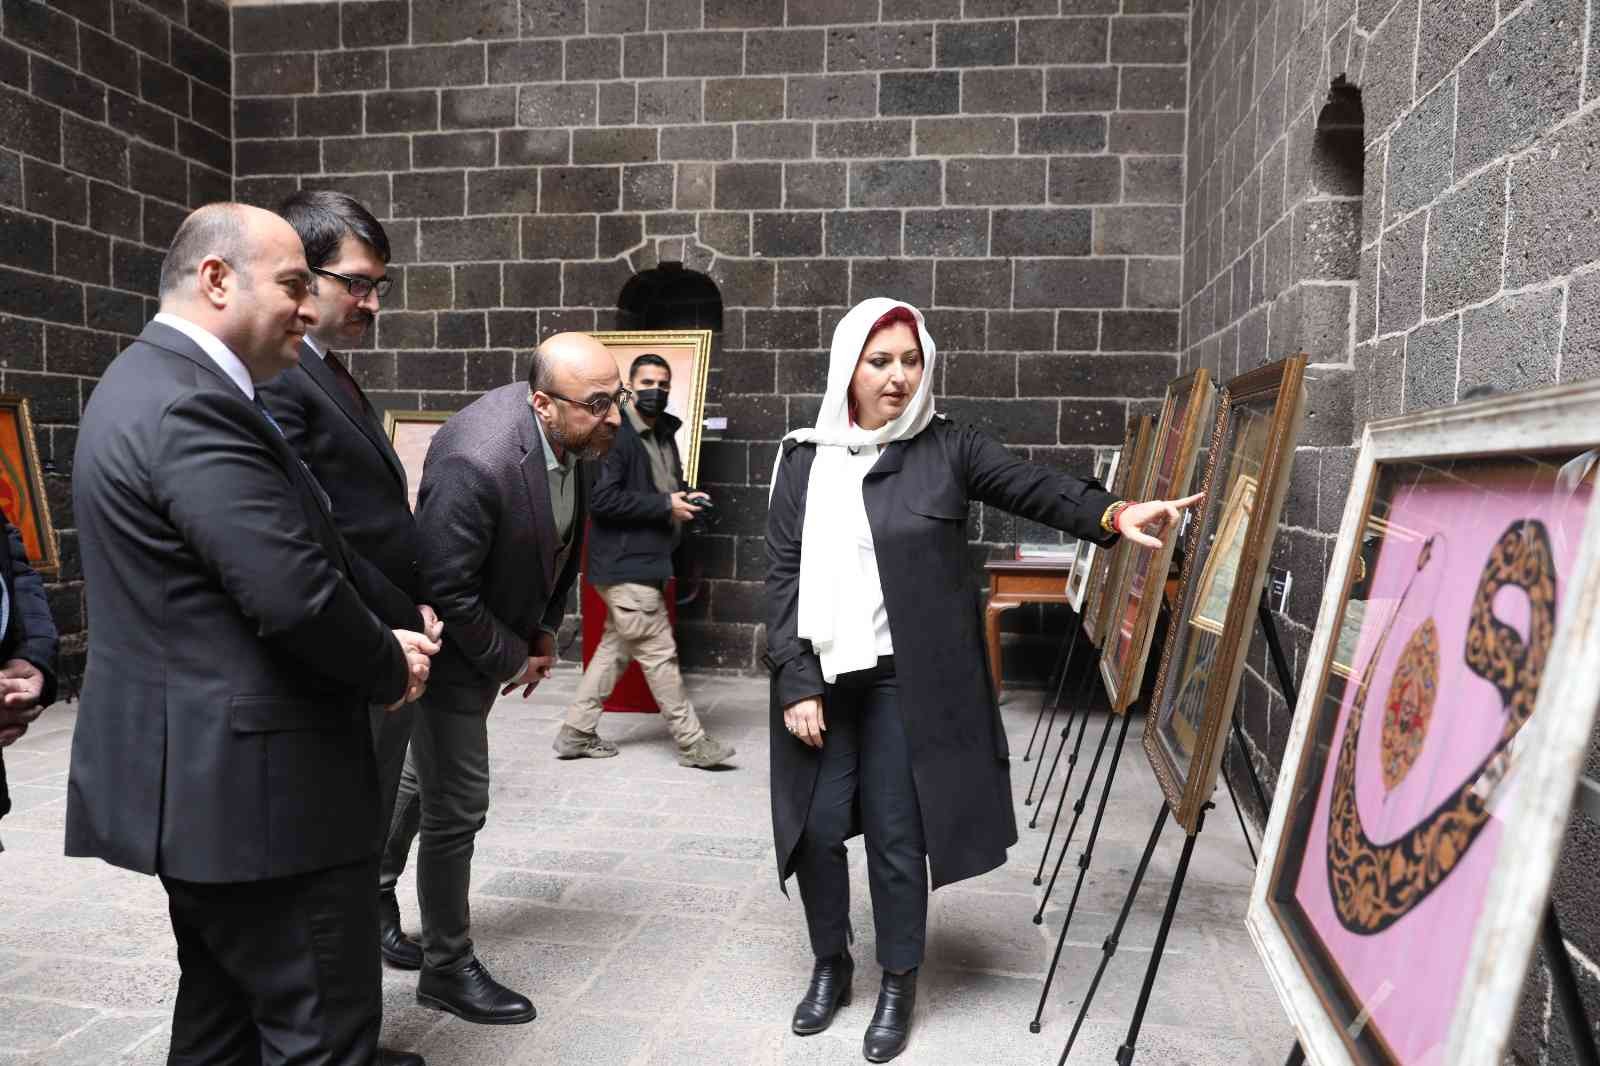 Diyarbakır’da ’Kelamdan Kaleme Hüsn-ü Hat’ sergisi açıldı #diyarbakir